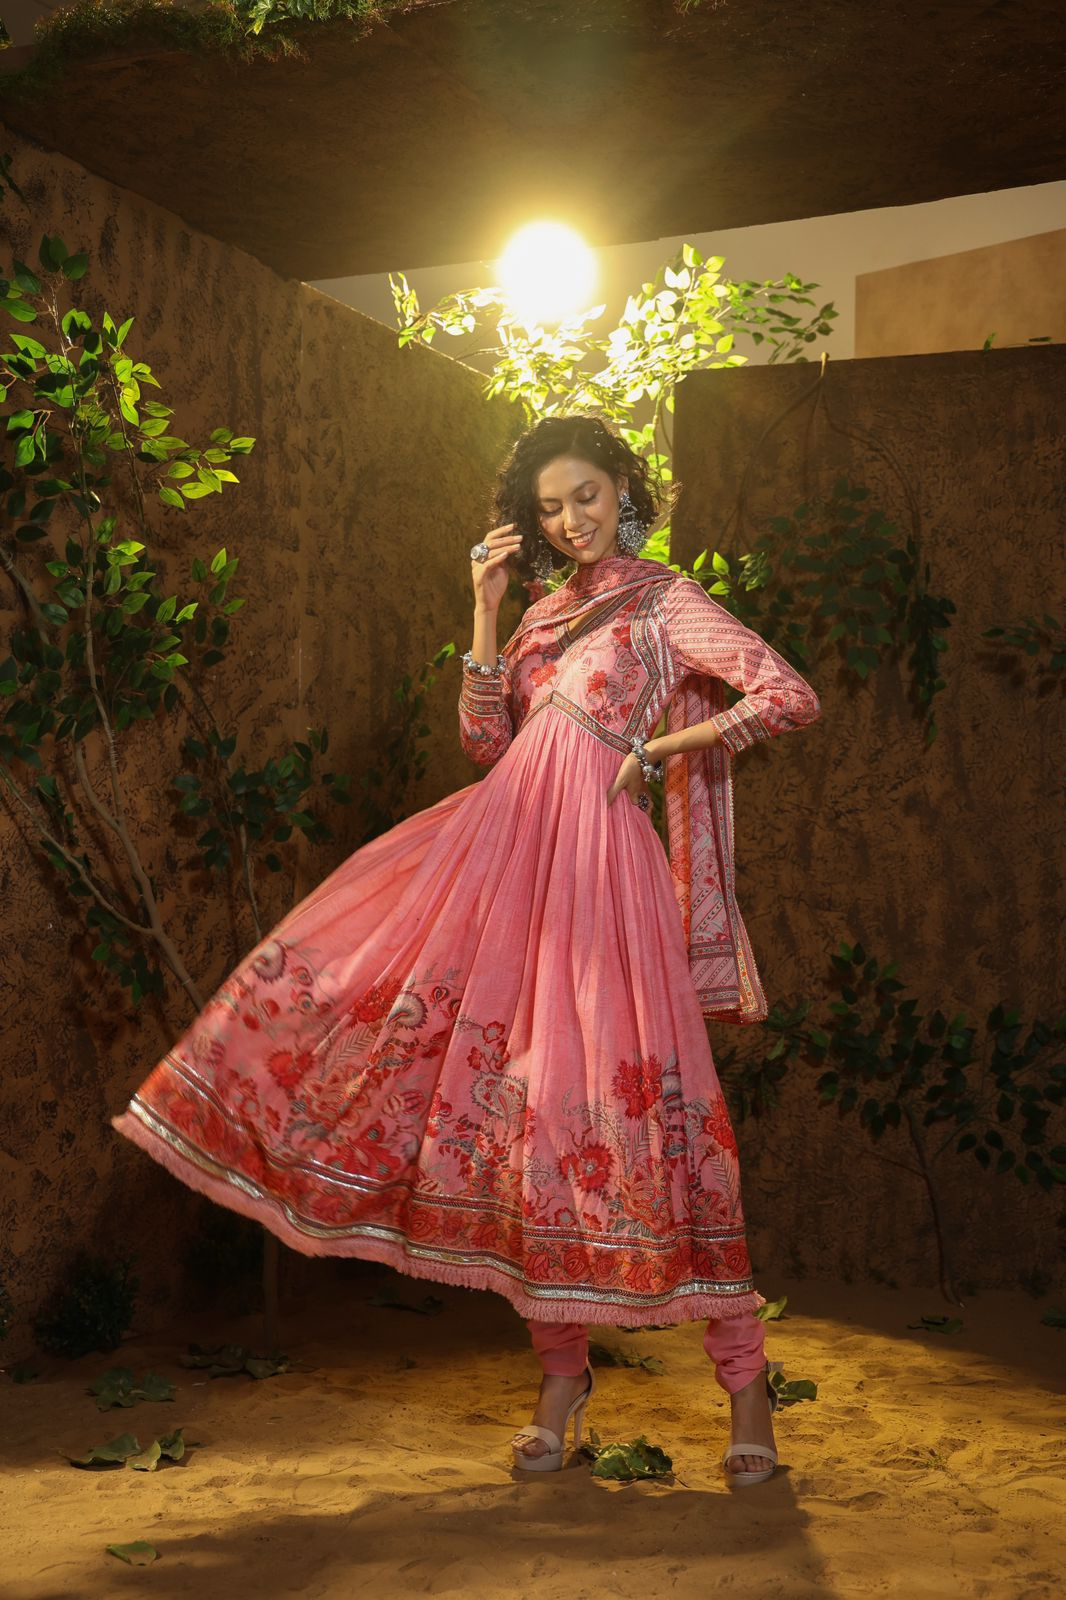 Breathtaking Alia Bhatt Dresses for Some Wedding Outfit Inspo